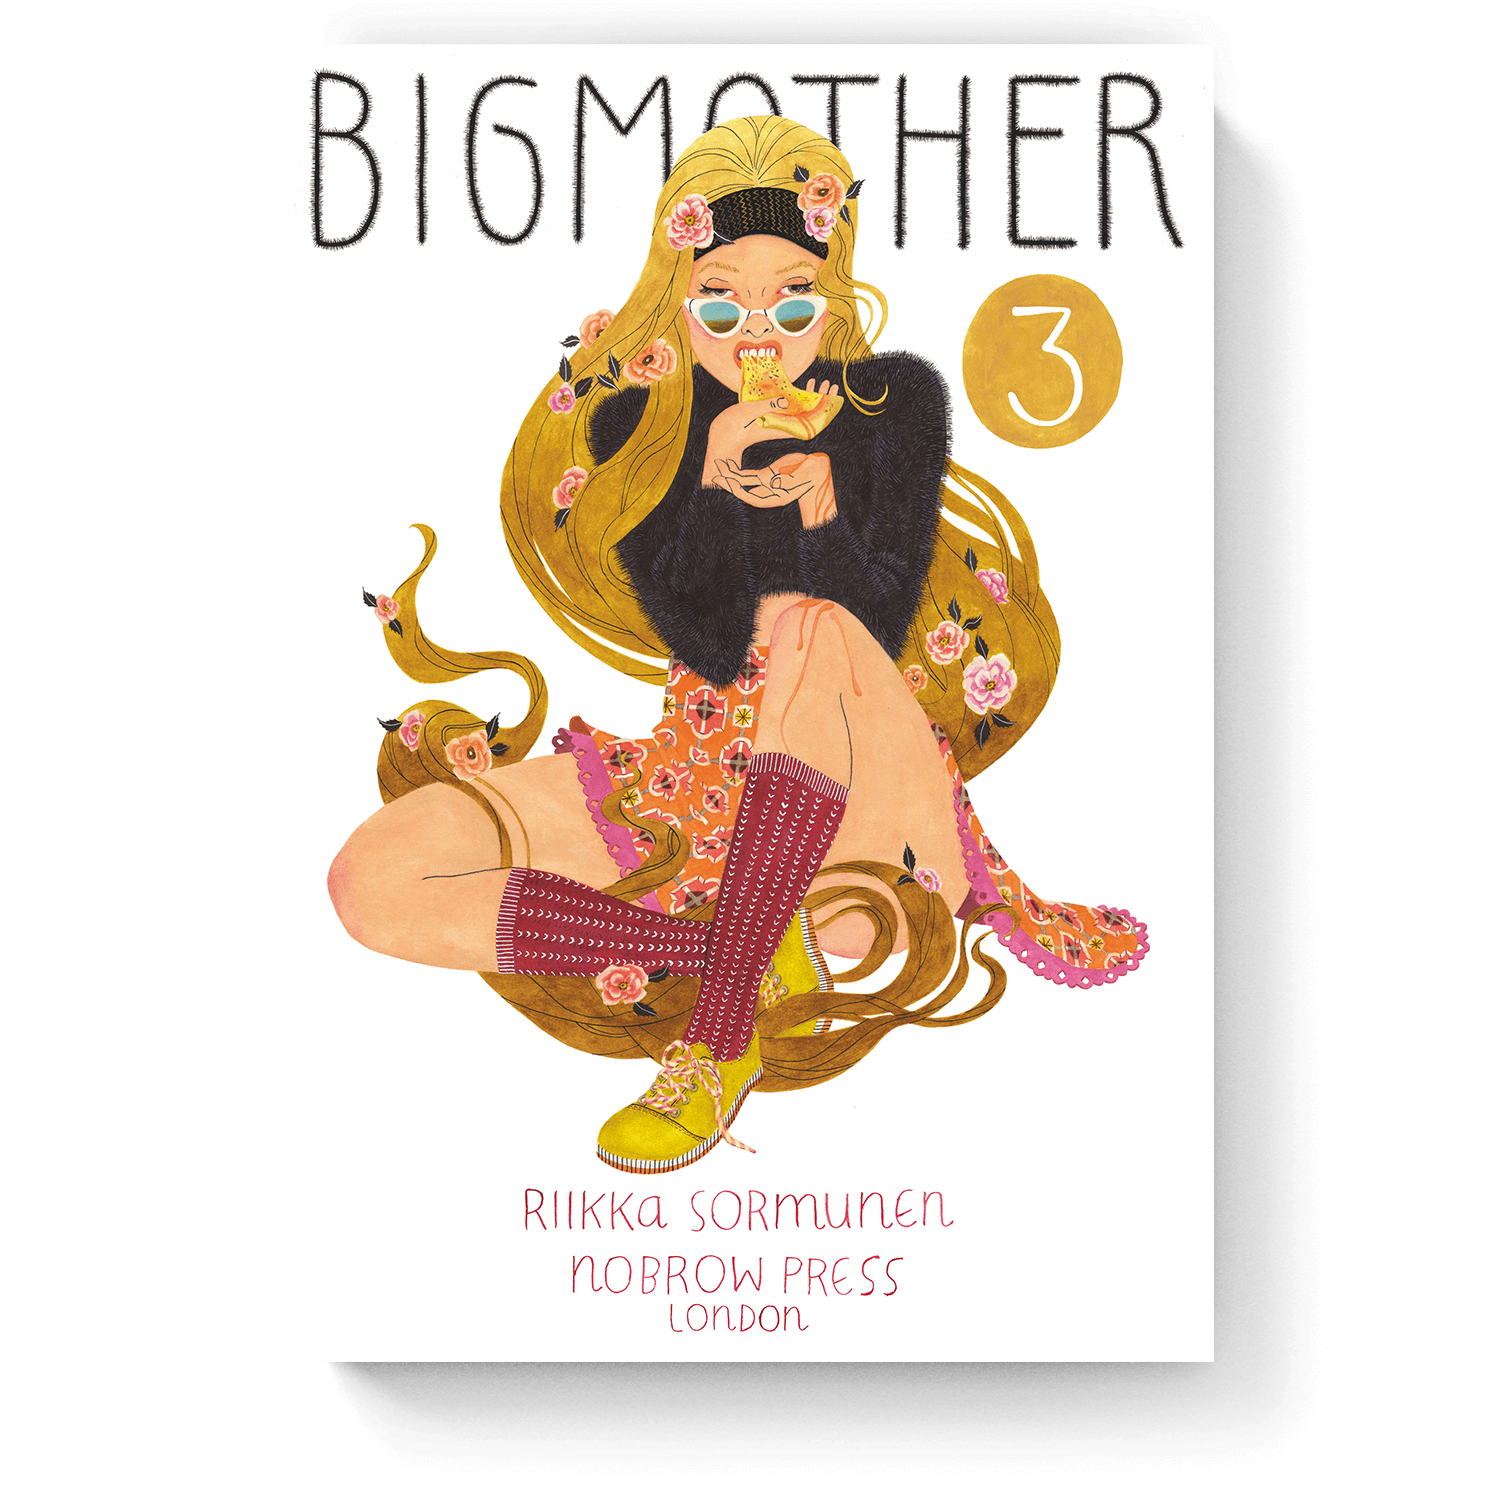 Big Mother Vol. 3